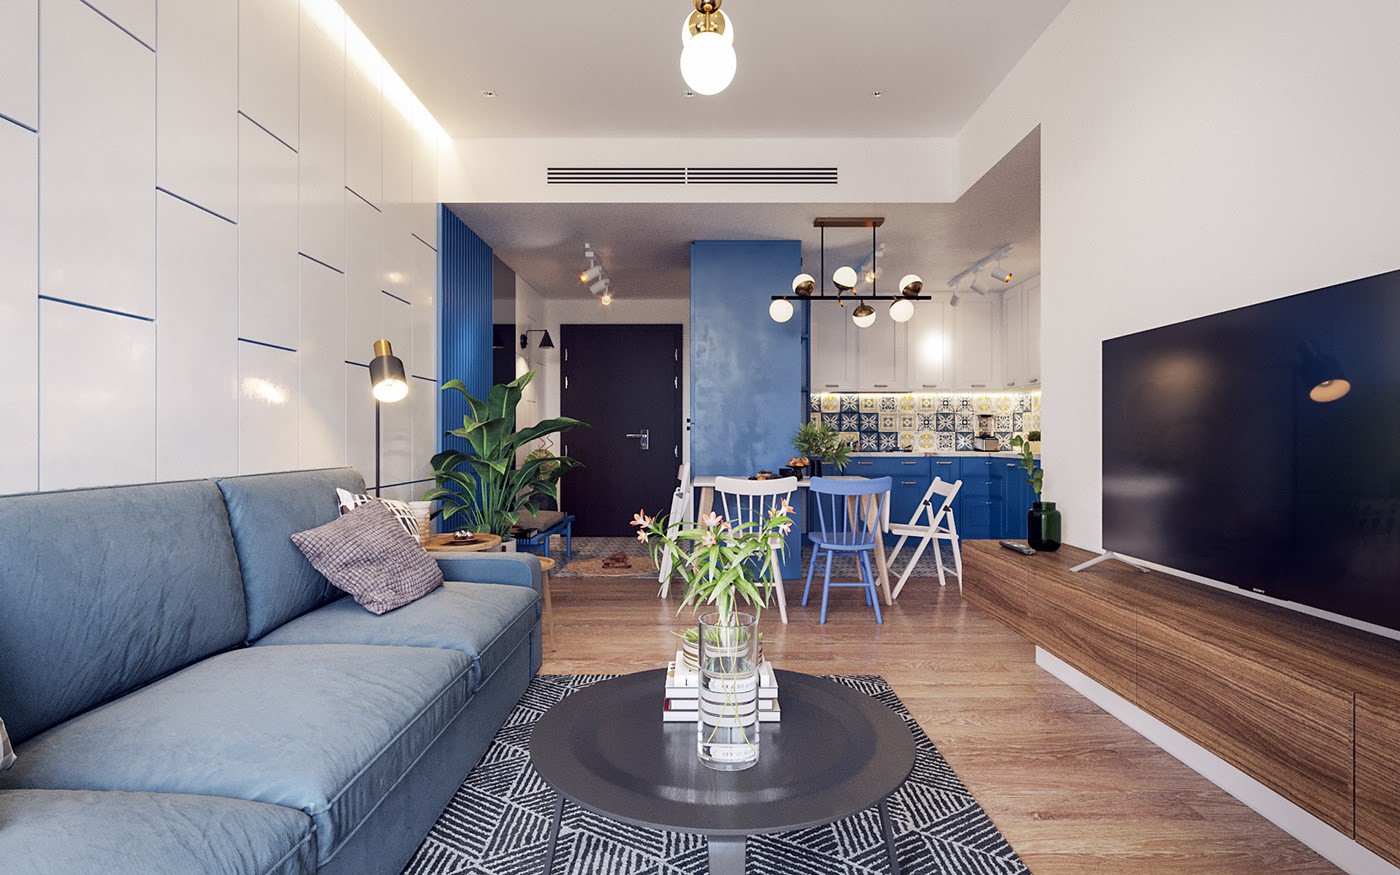 Hình ảnh toàn cảnh phòng khách với sofa xanh dương, tủ kệ tivi bằng gỗ xám, liền kề phòng ăn và khu bếp